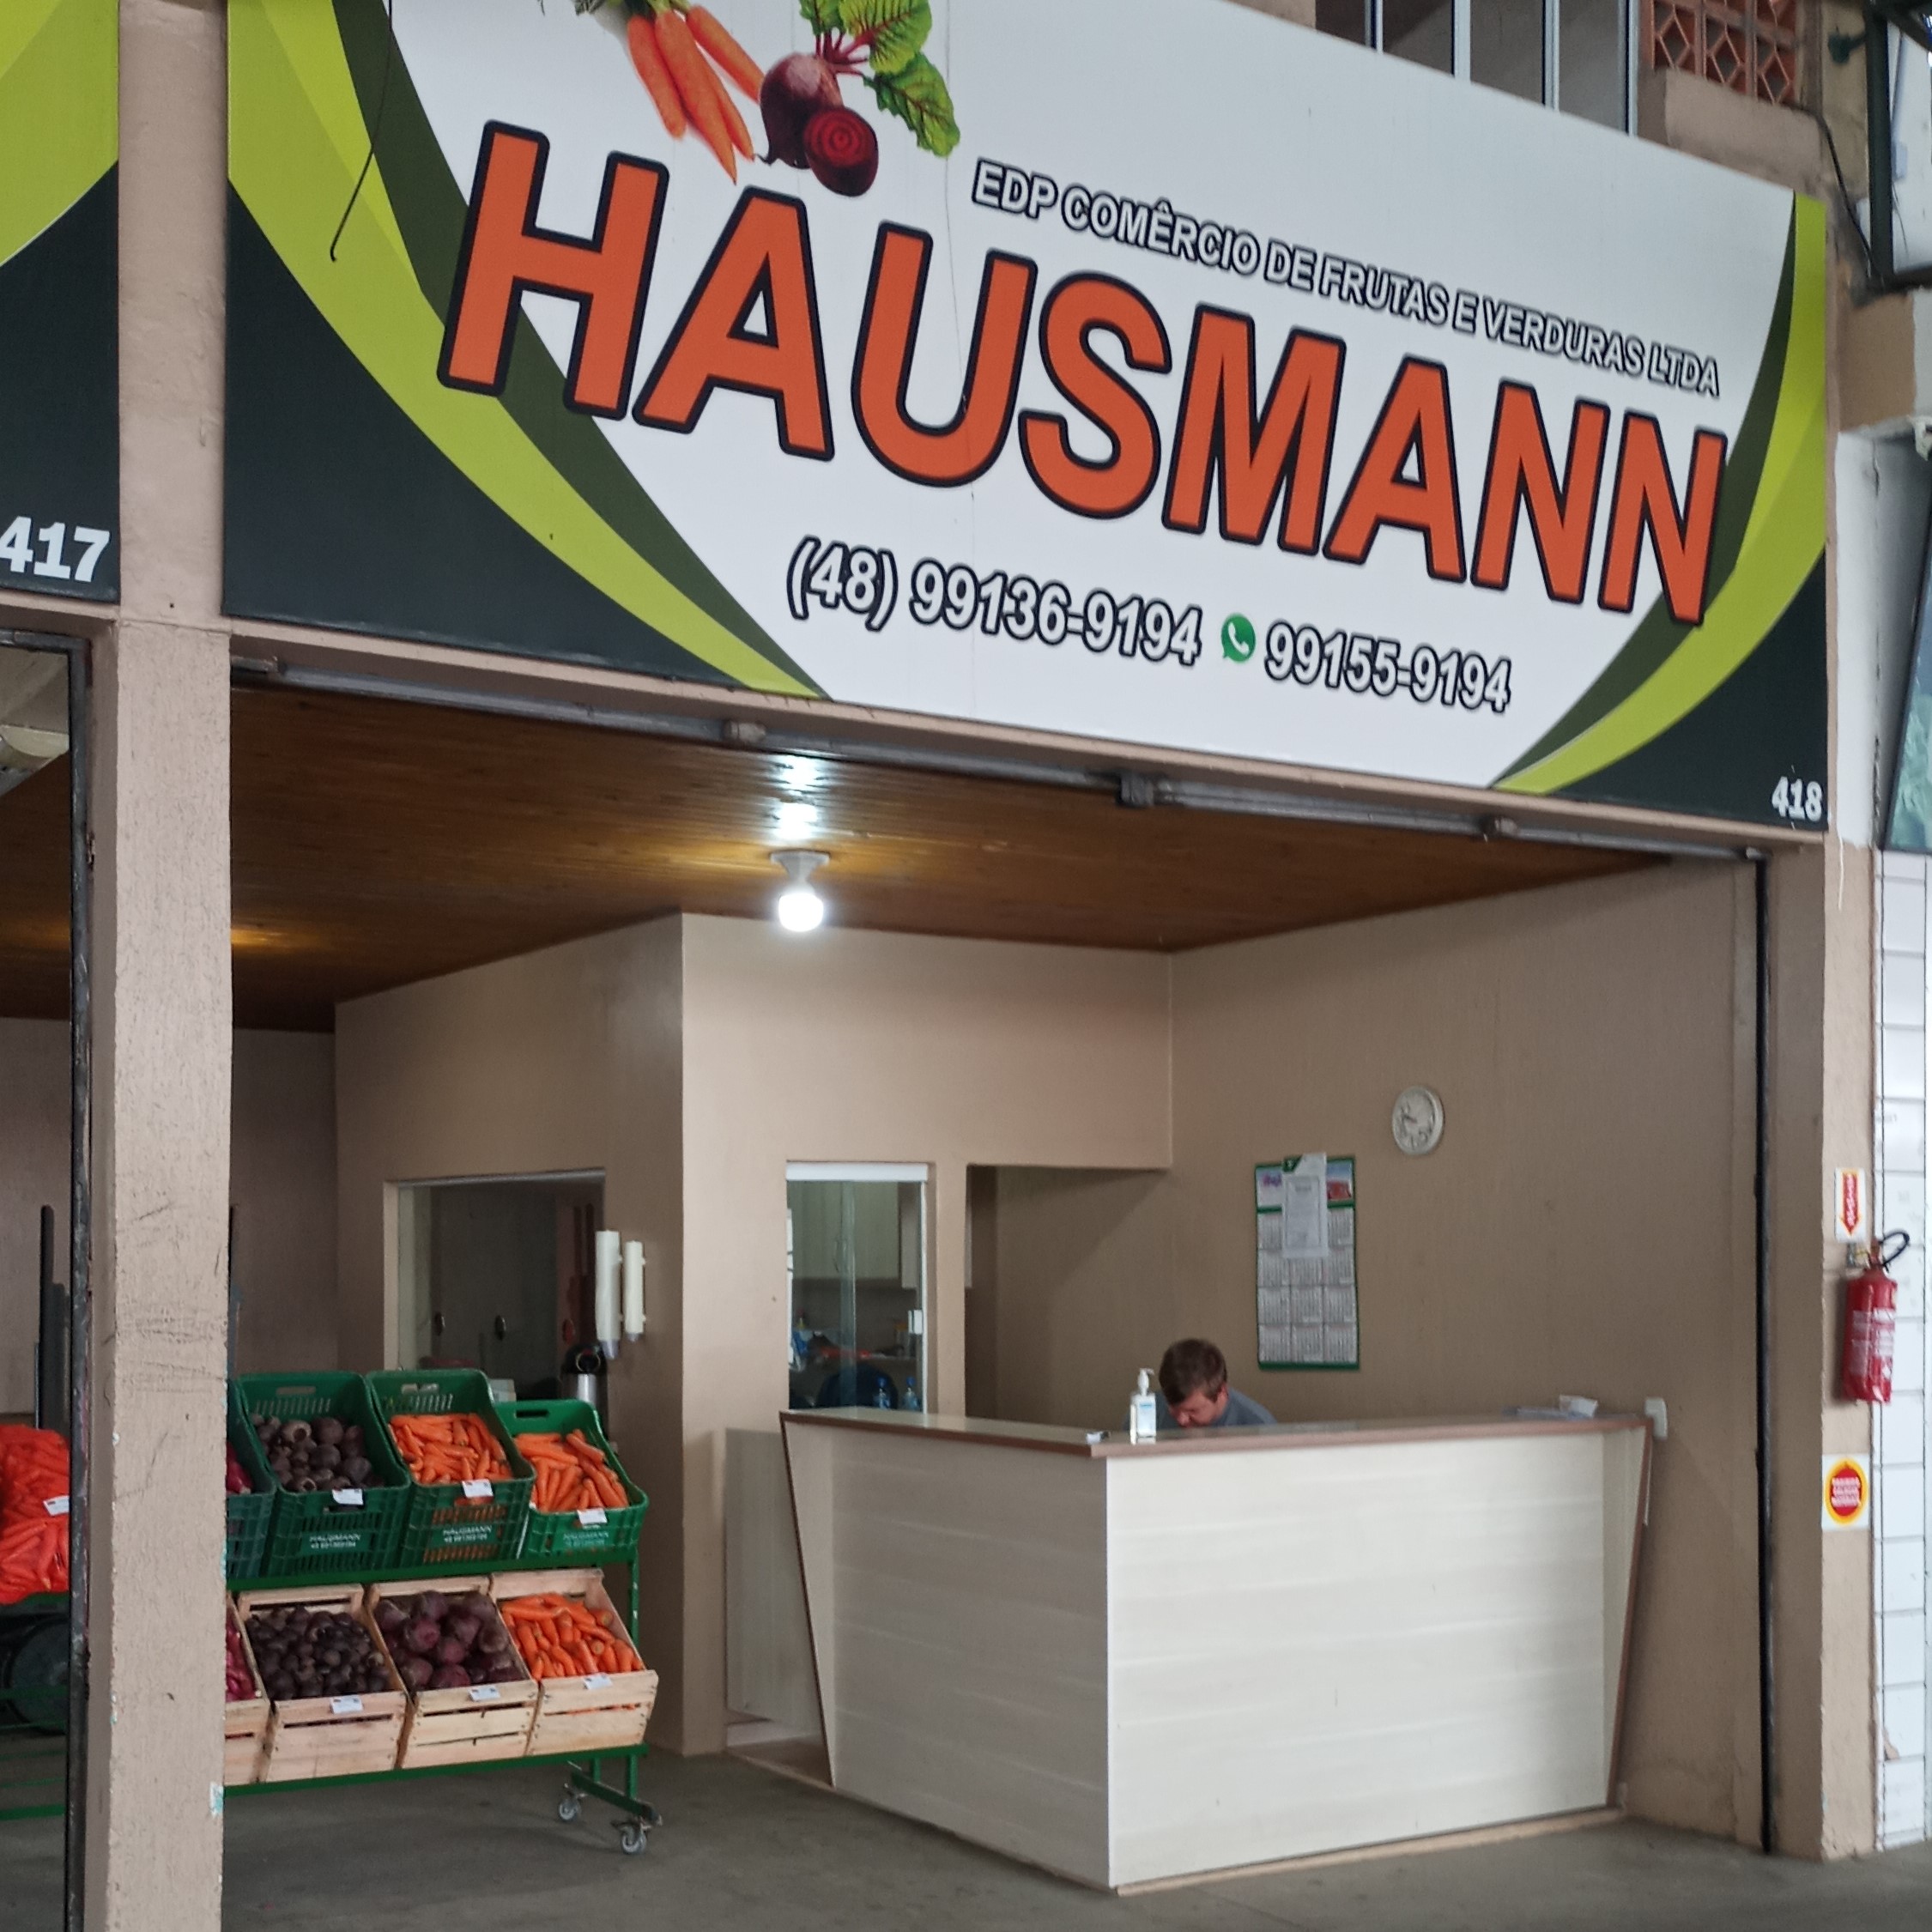 417 418 Hausmann